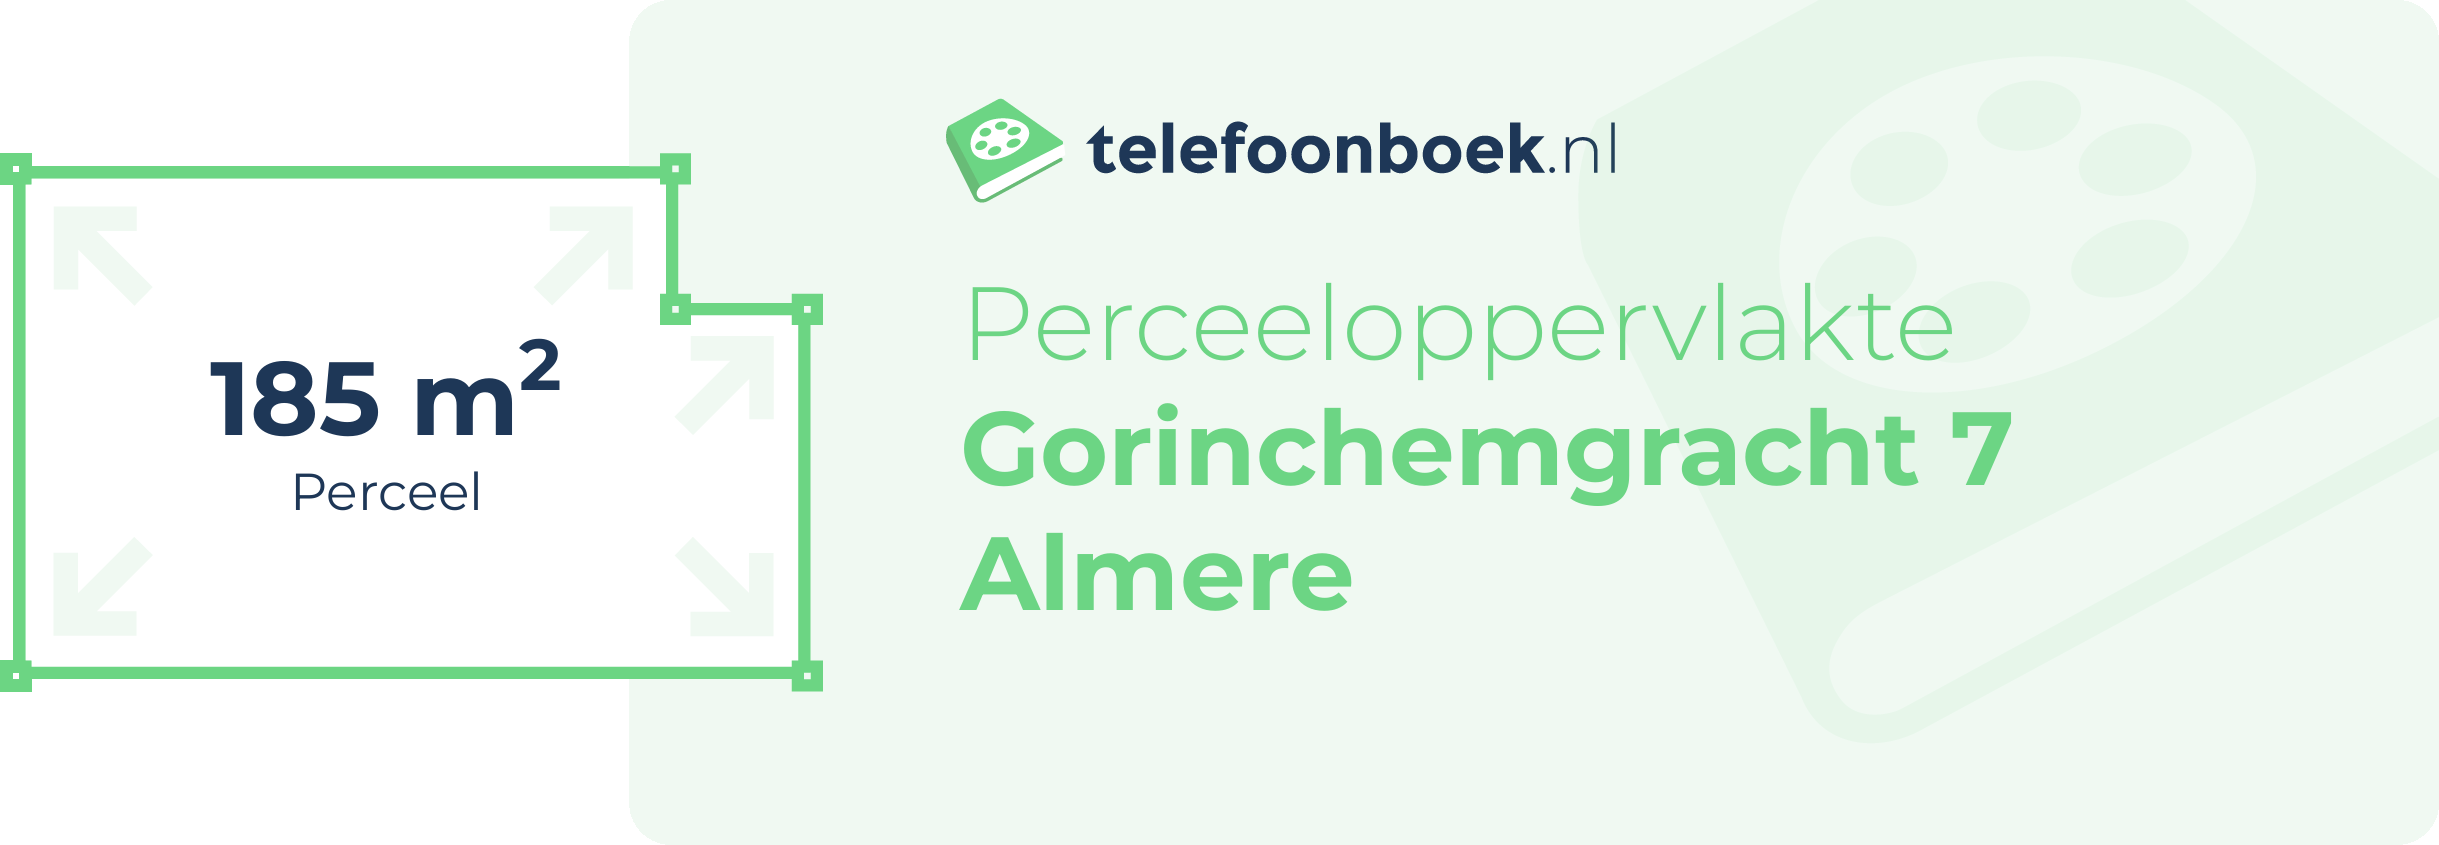 Perceeloppervlakte Gorinchemgracht 7 Almere